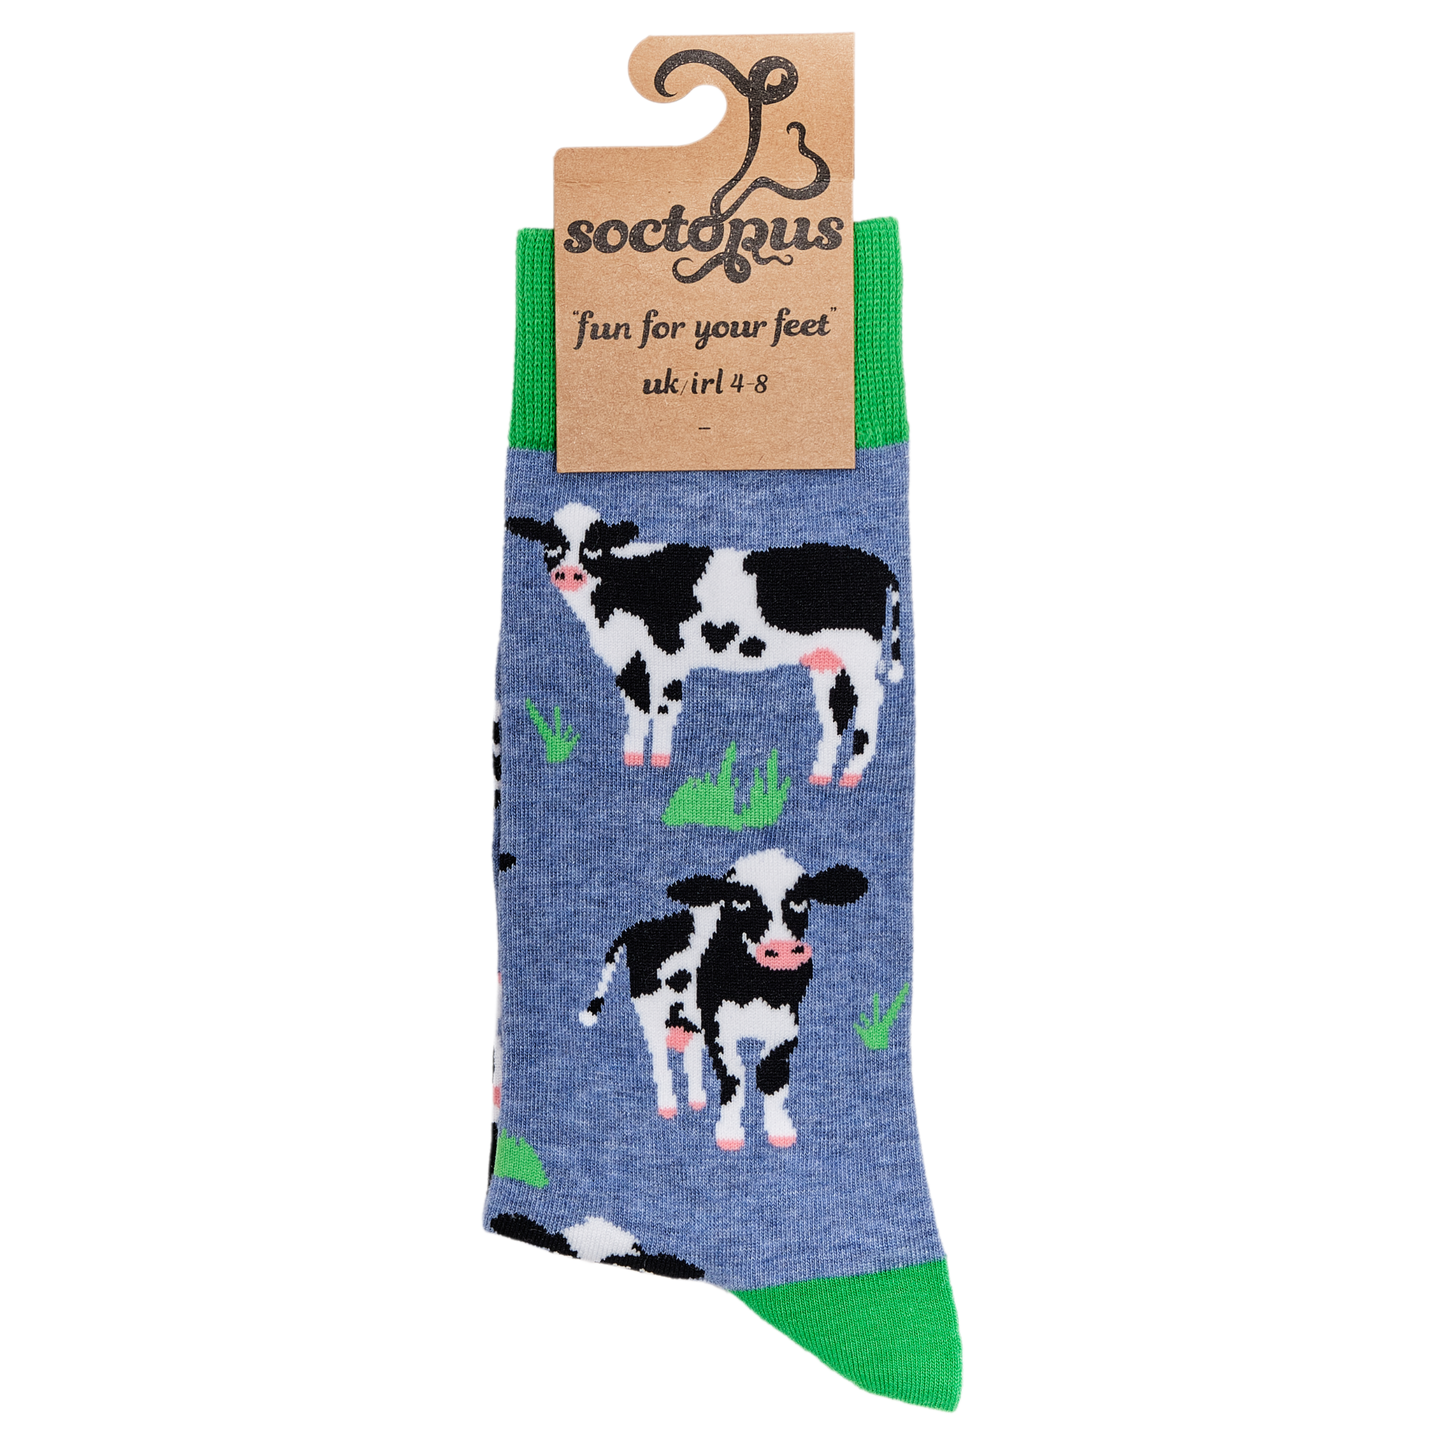 Cow Lover Socks